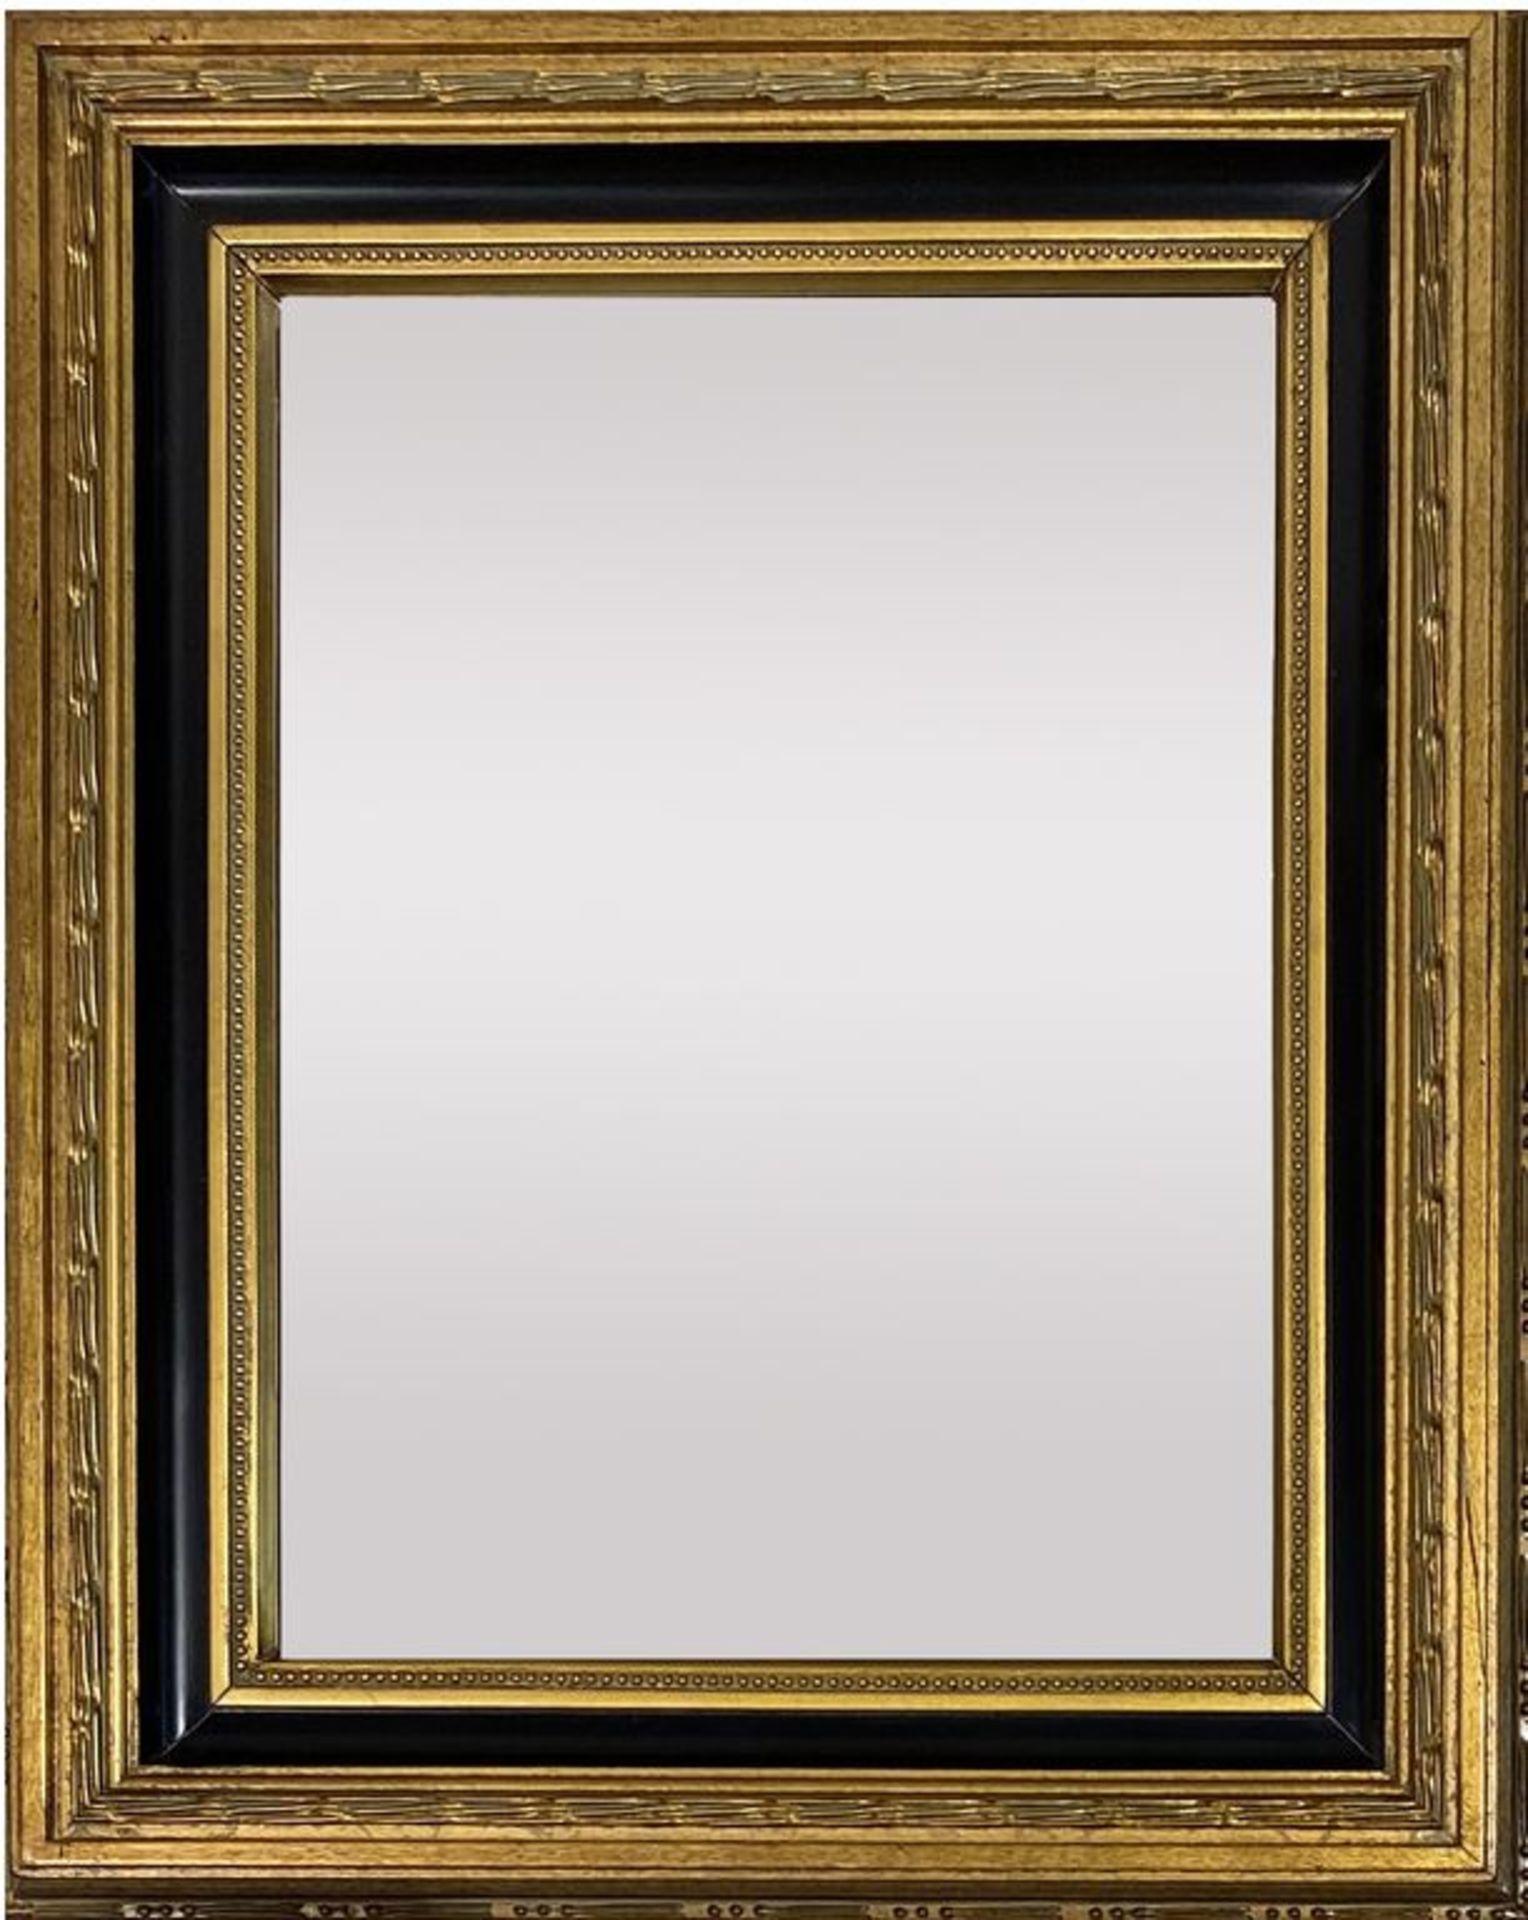 Paar kleine und zwei einzelne Prunkspiegel. Holz/Stuck, vergoldet bzw. schwarz gelackt. Abweichende  - Bild 2 aus 3